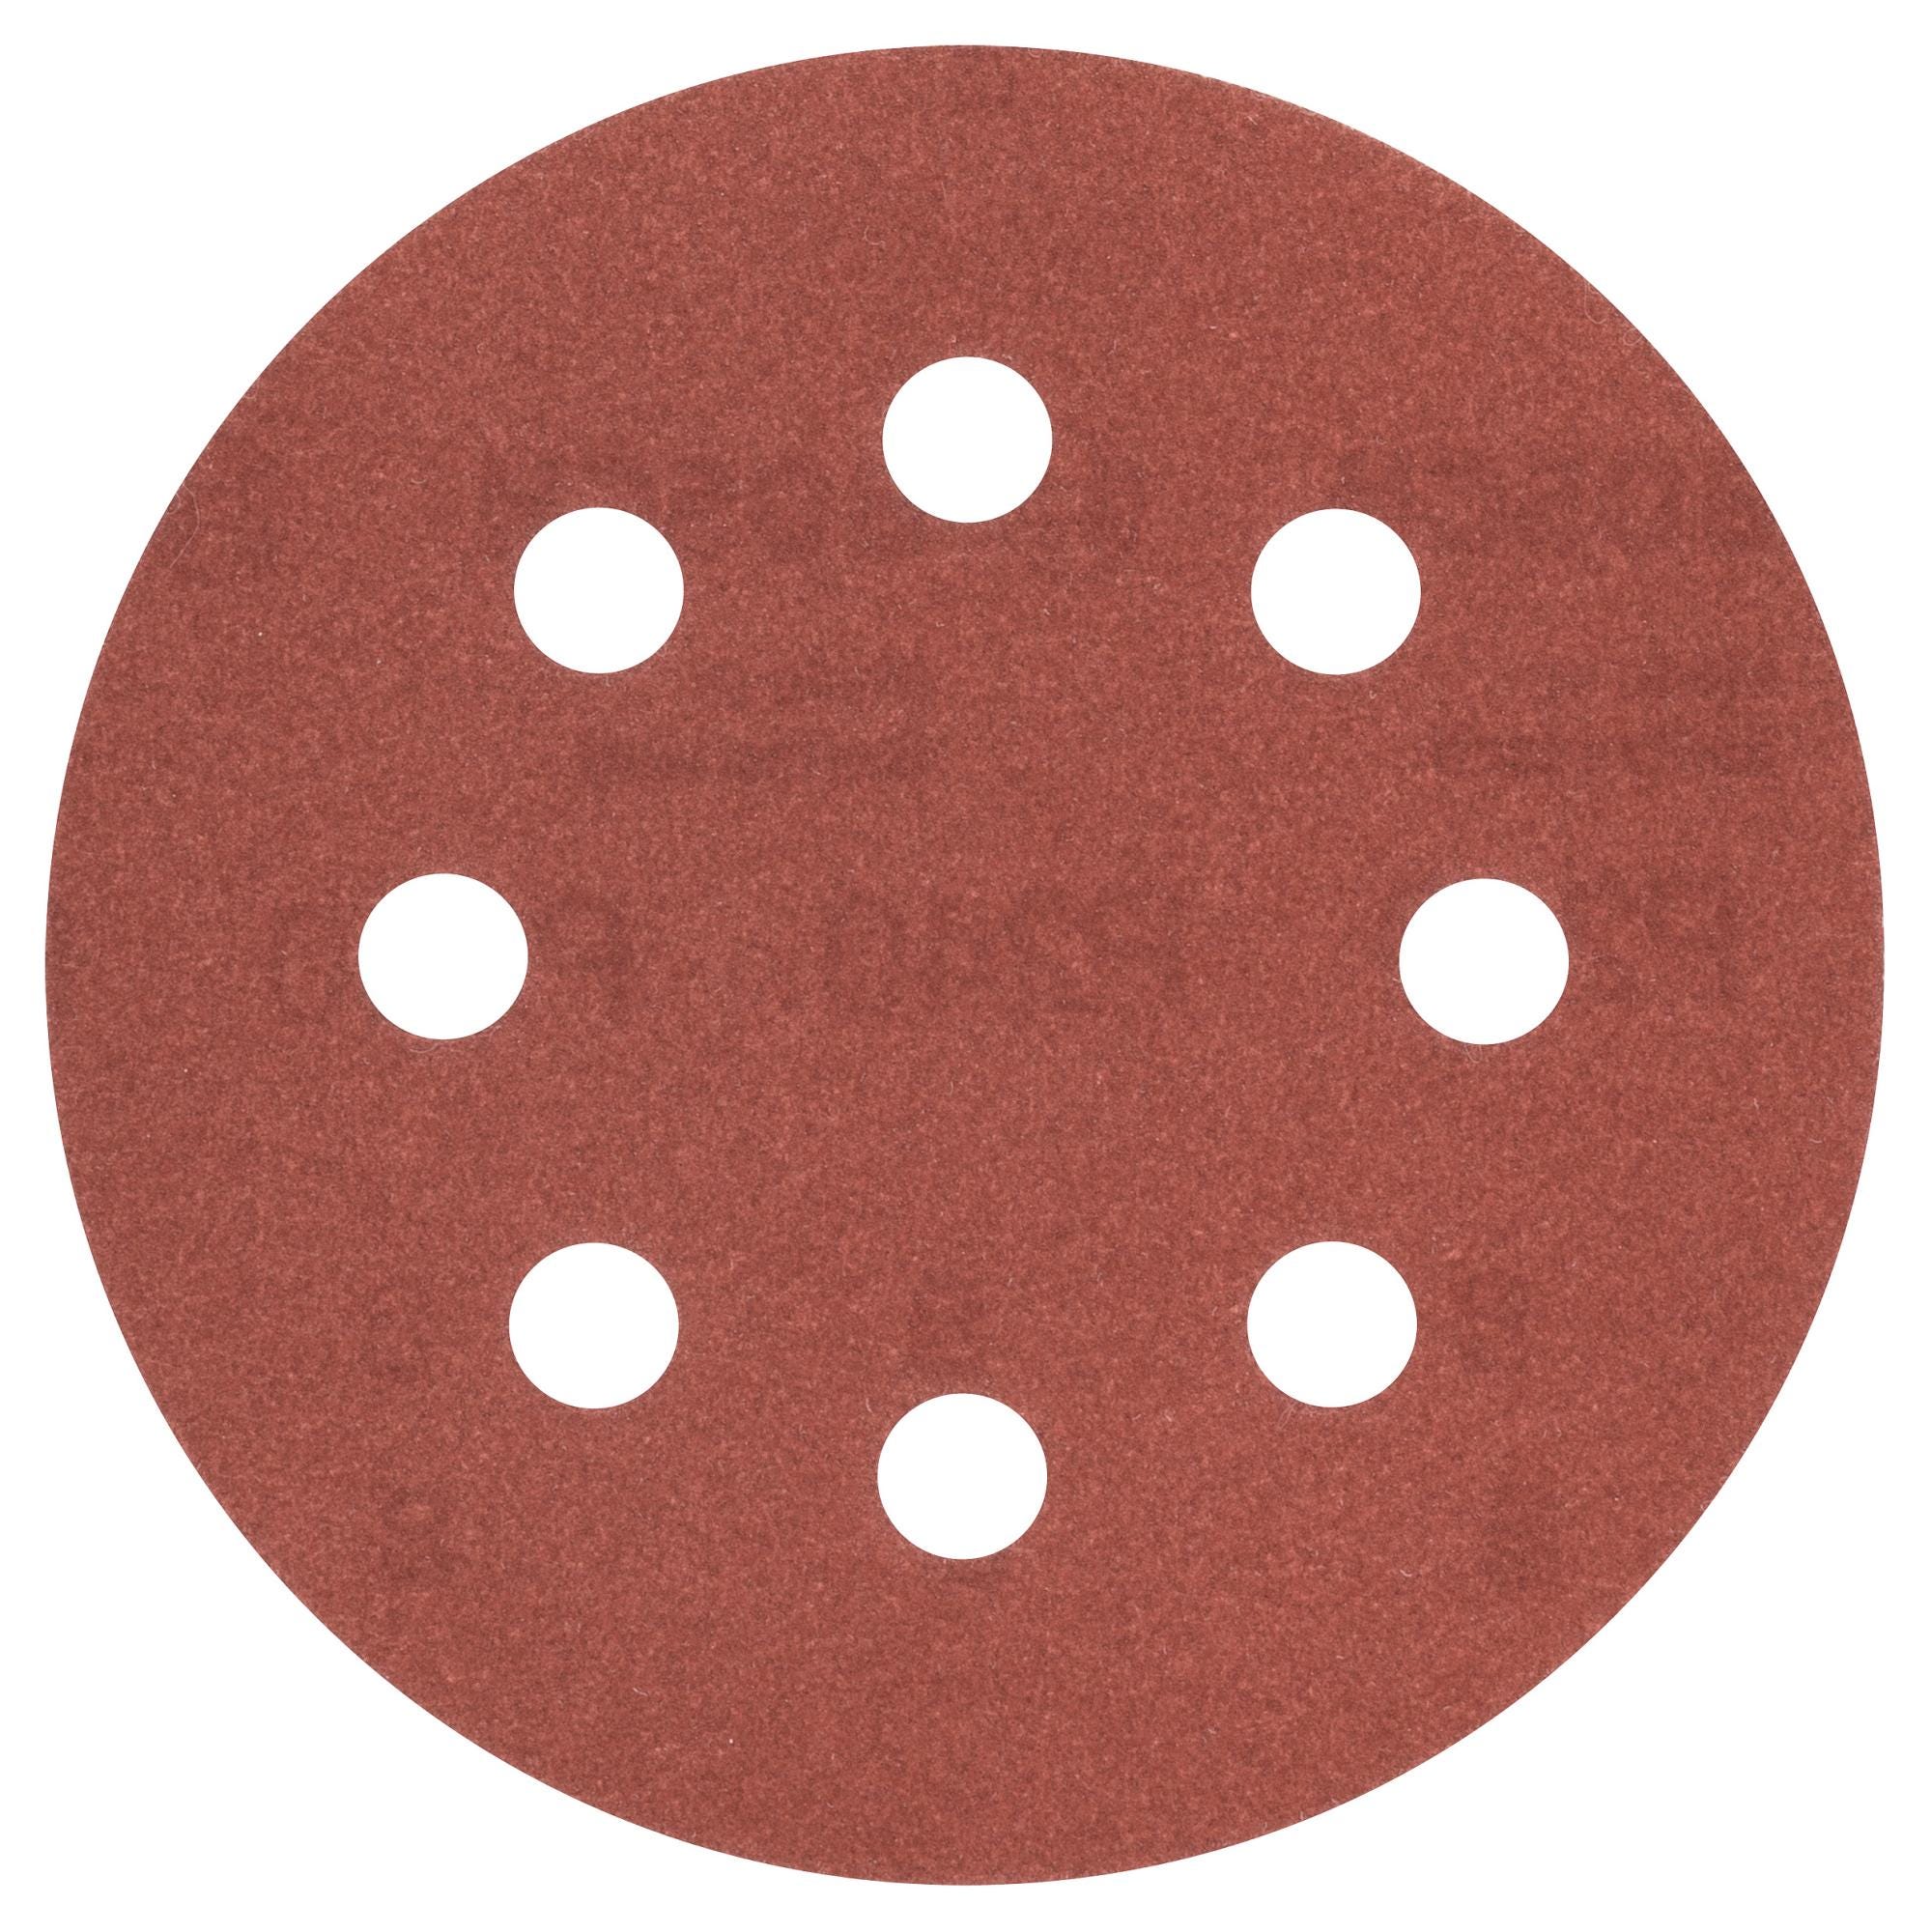 5 disques abrasifs pour ponceuse excentrique BOSCH, 115 mm grains 240